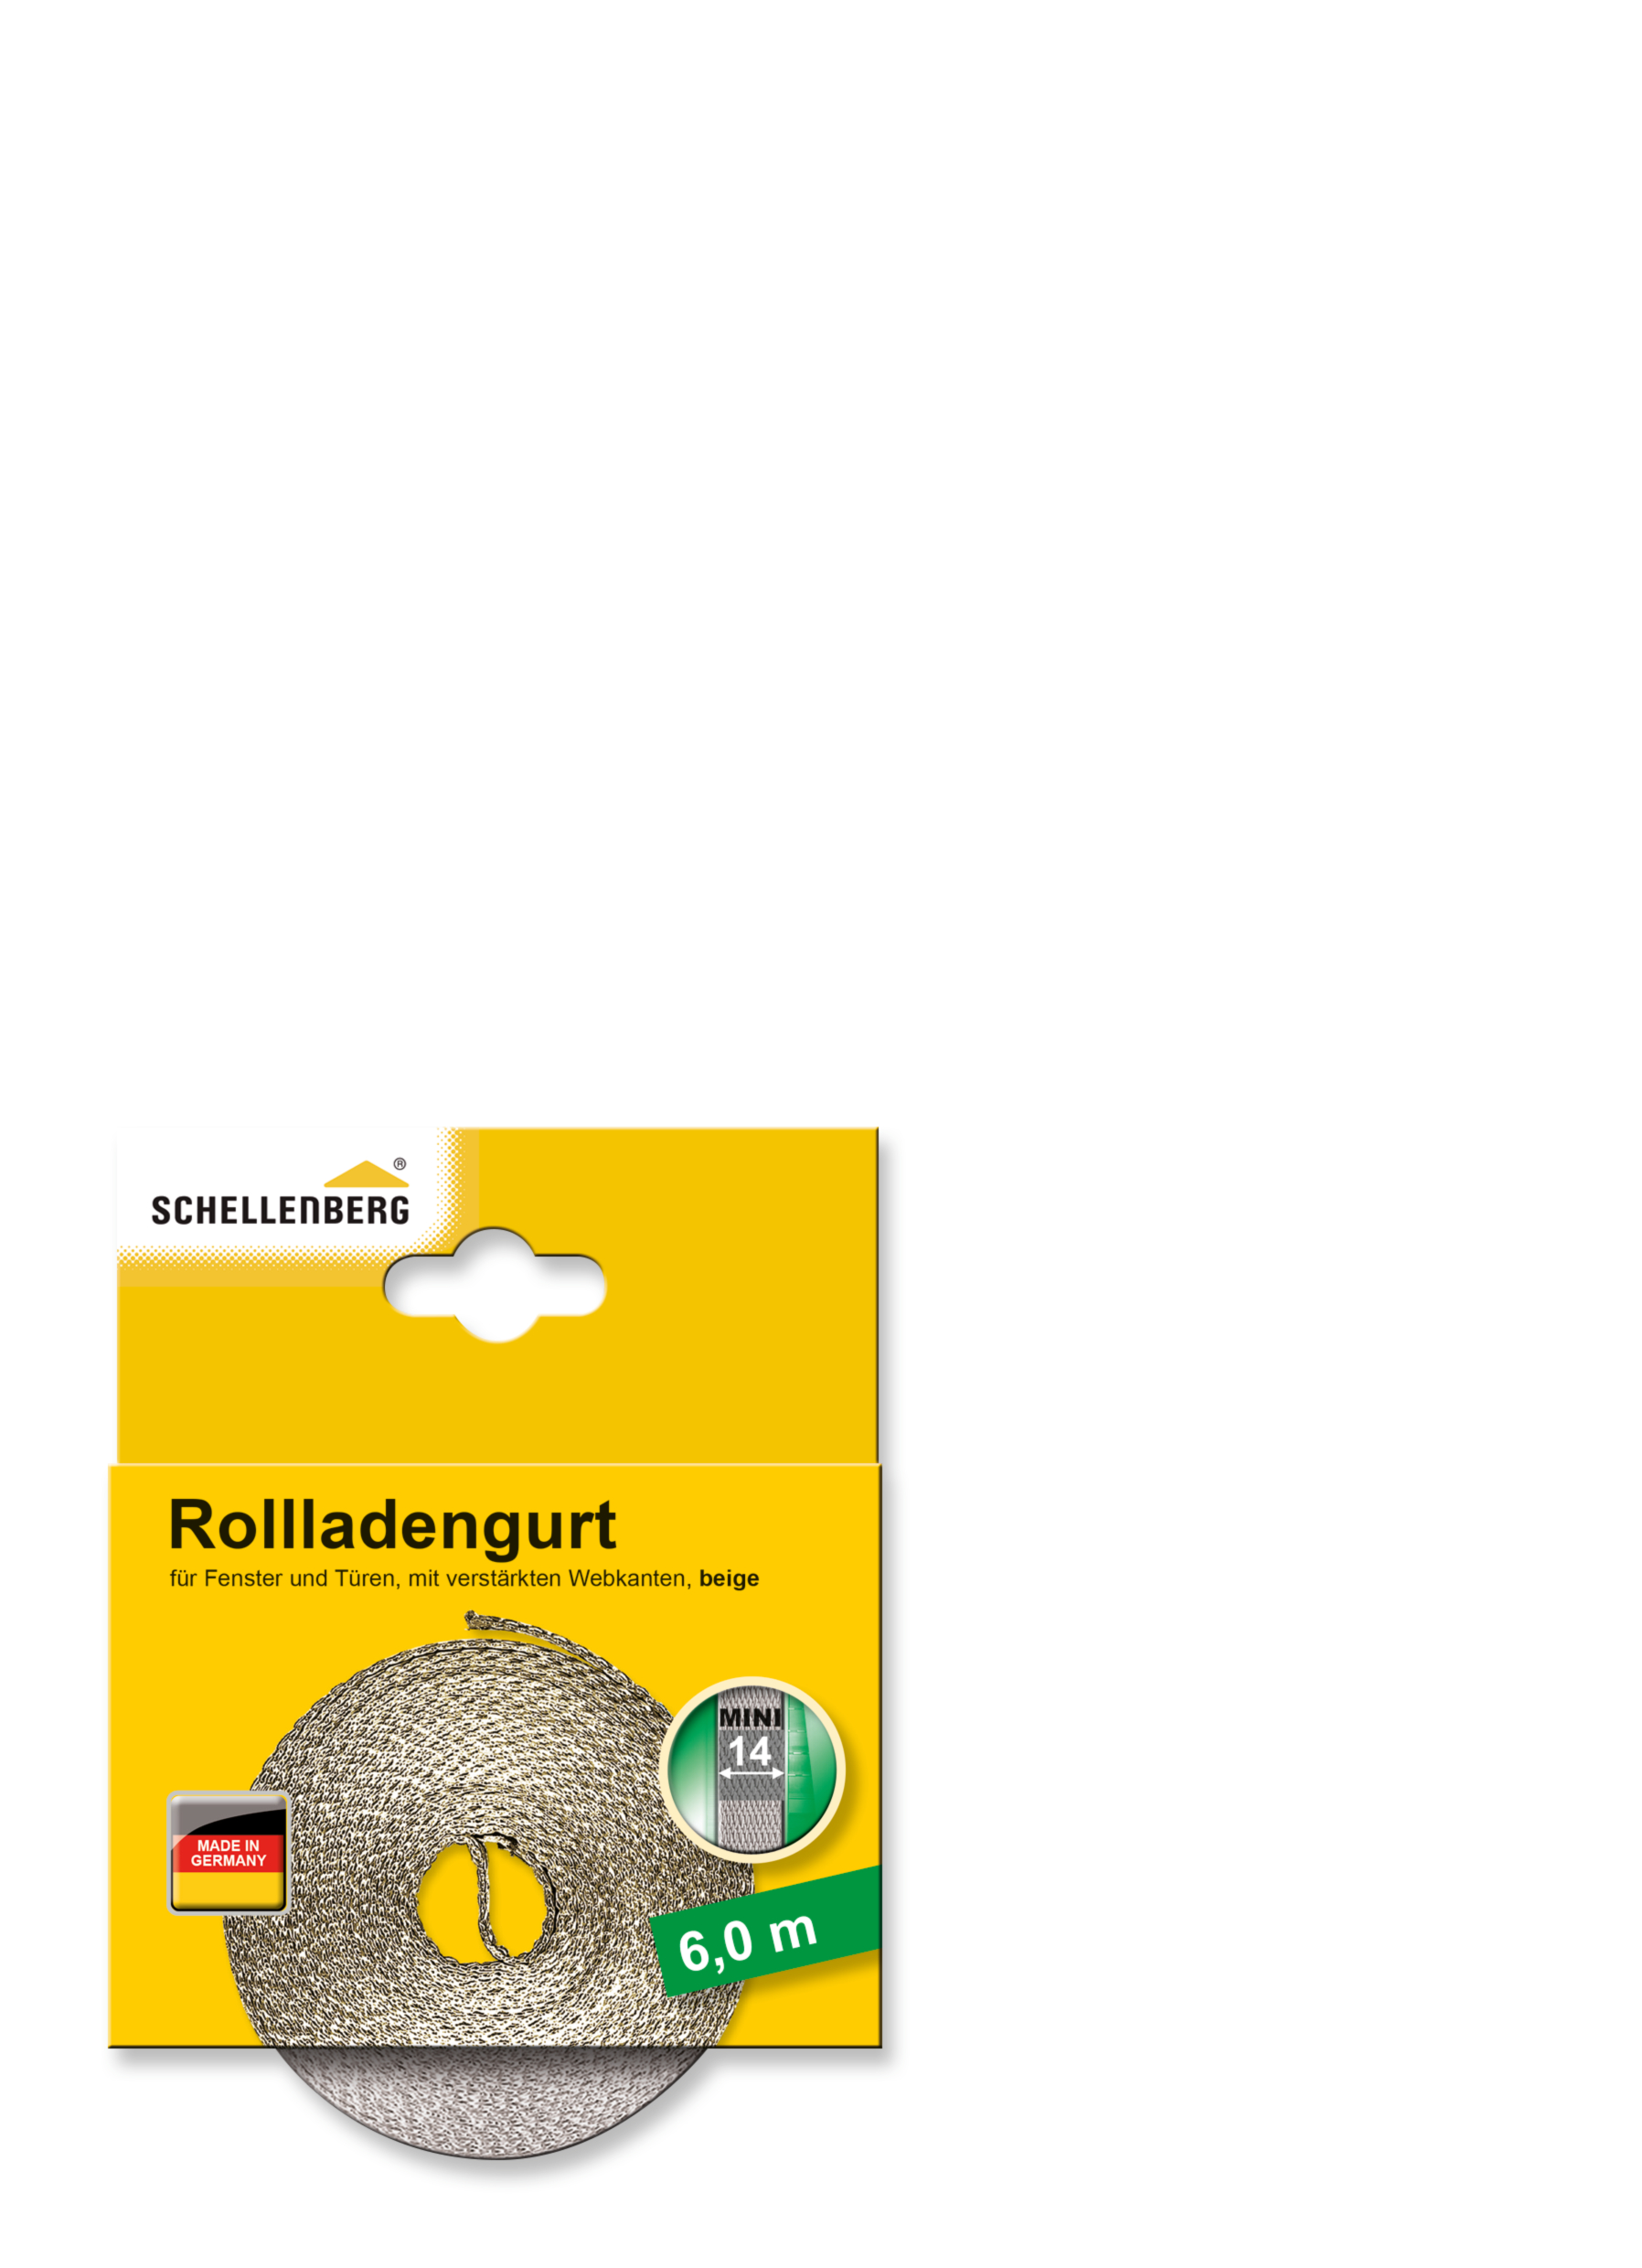 SCHELLENBERG Rollladengurt 14 mm/6,0 m beige 